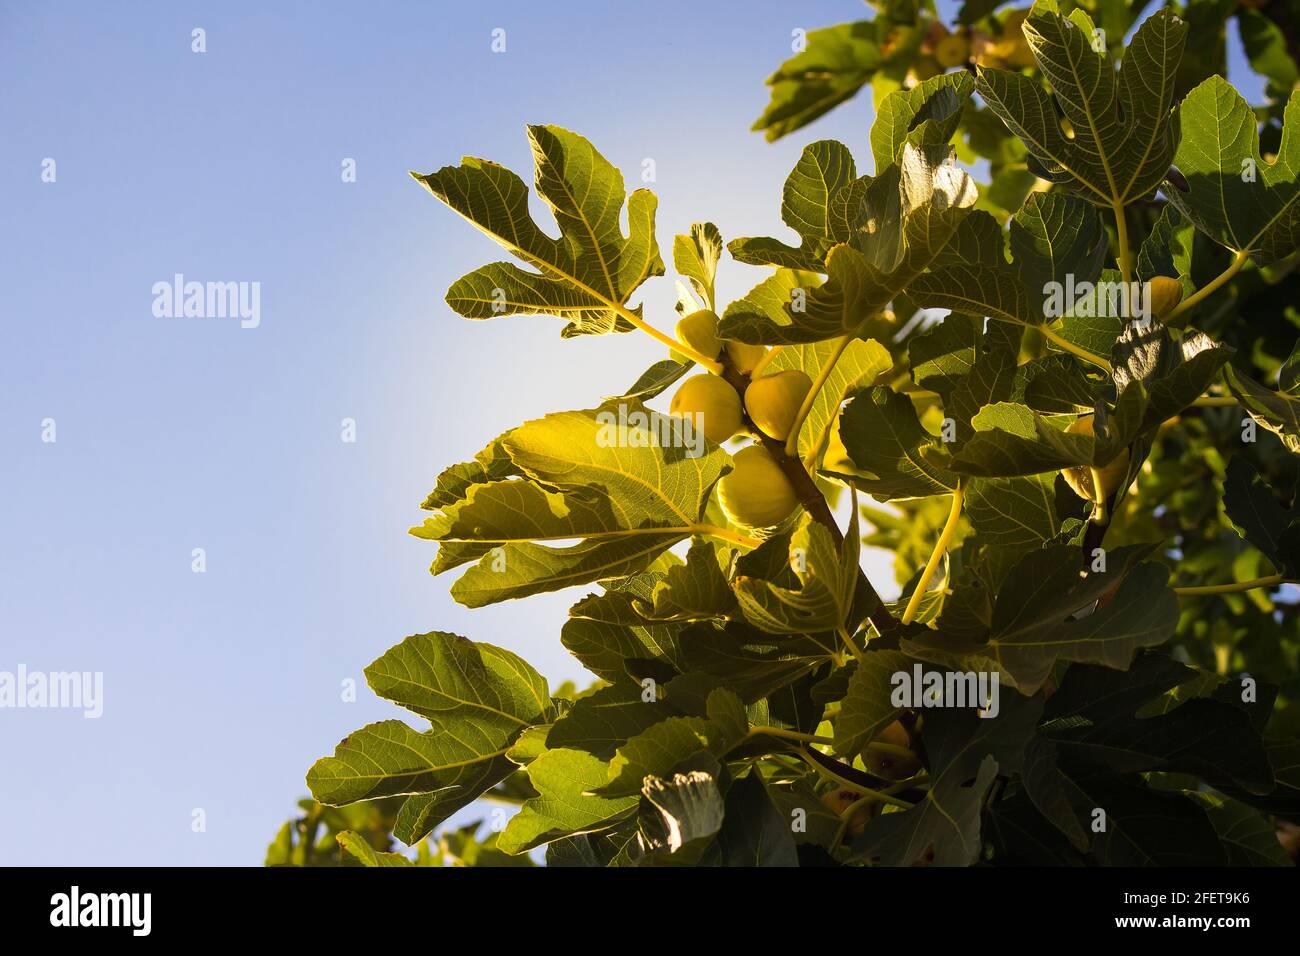 Nahaufnahme der gelben Feigen (Ficus carica) auf einem Baum mit klarem, blauem Himmel, aufgenommen in Izmir / Türkei Stockfoto